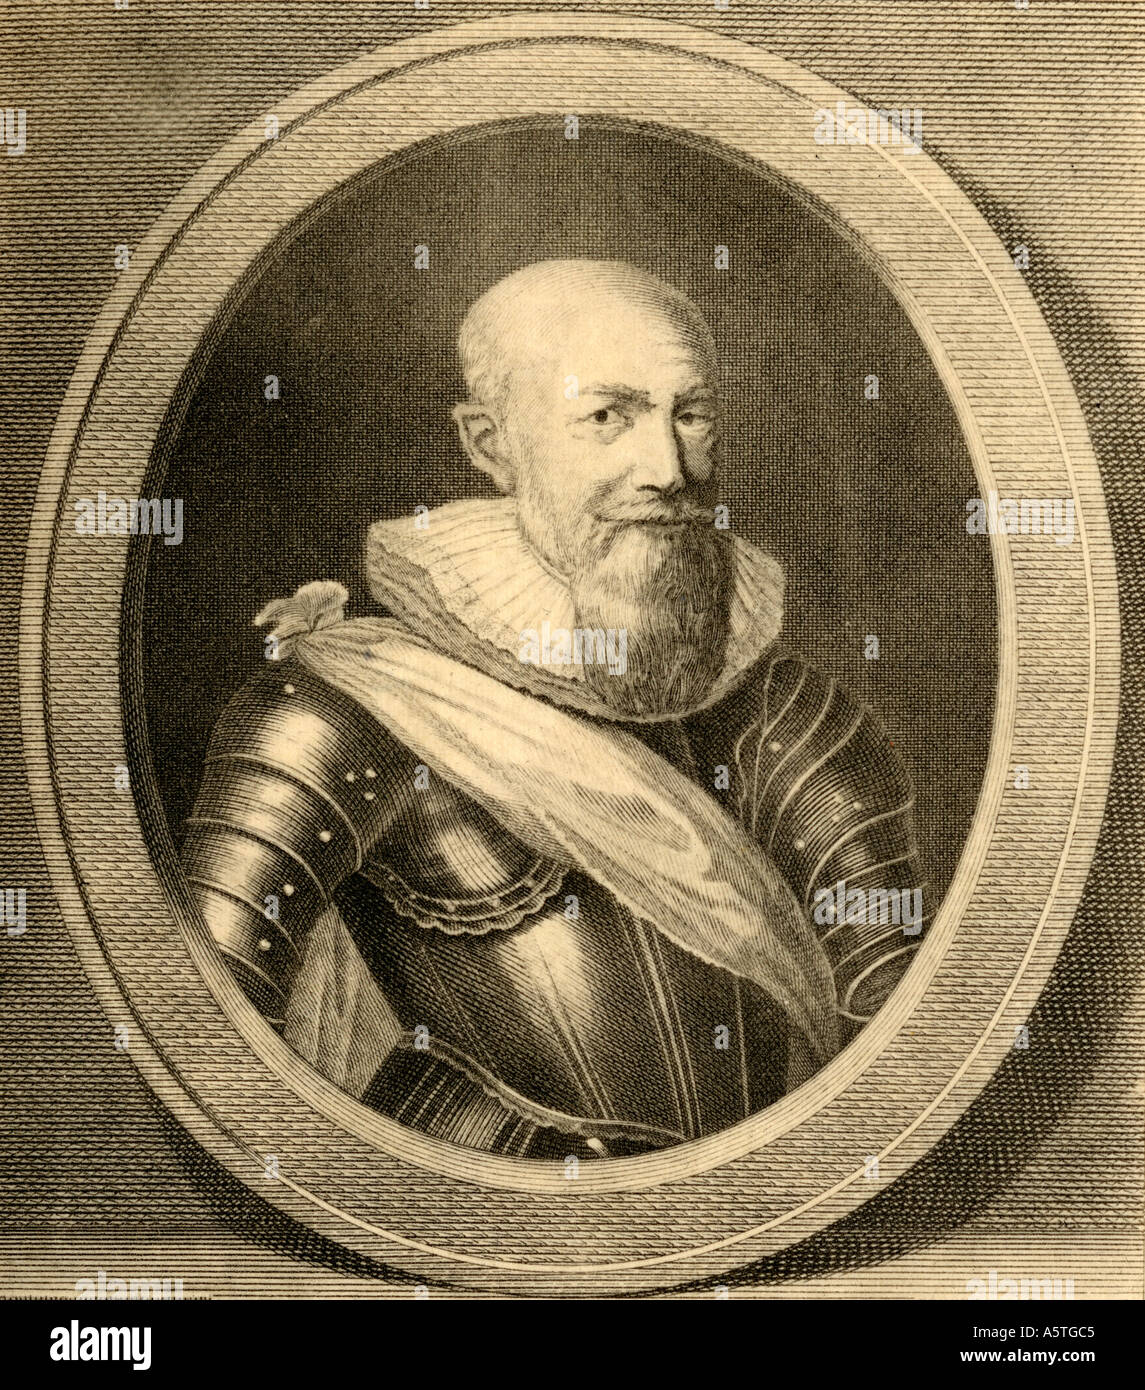 Maximilien de Béthune, duc de Sully, 1559 - 1641. Noble français, soldat et homme d'État. Banque D'Images